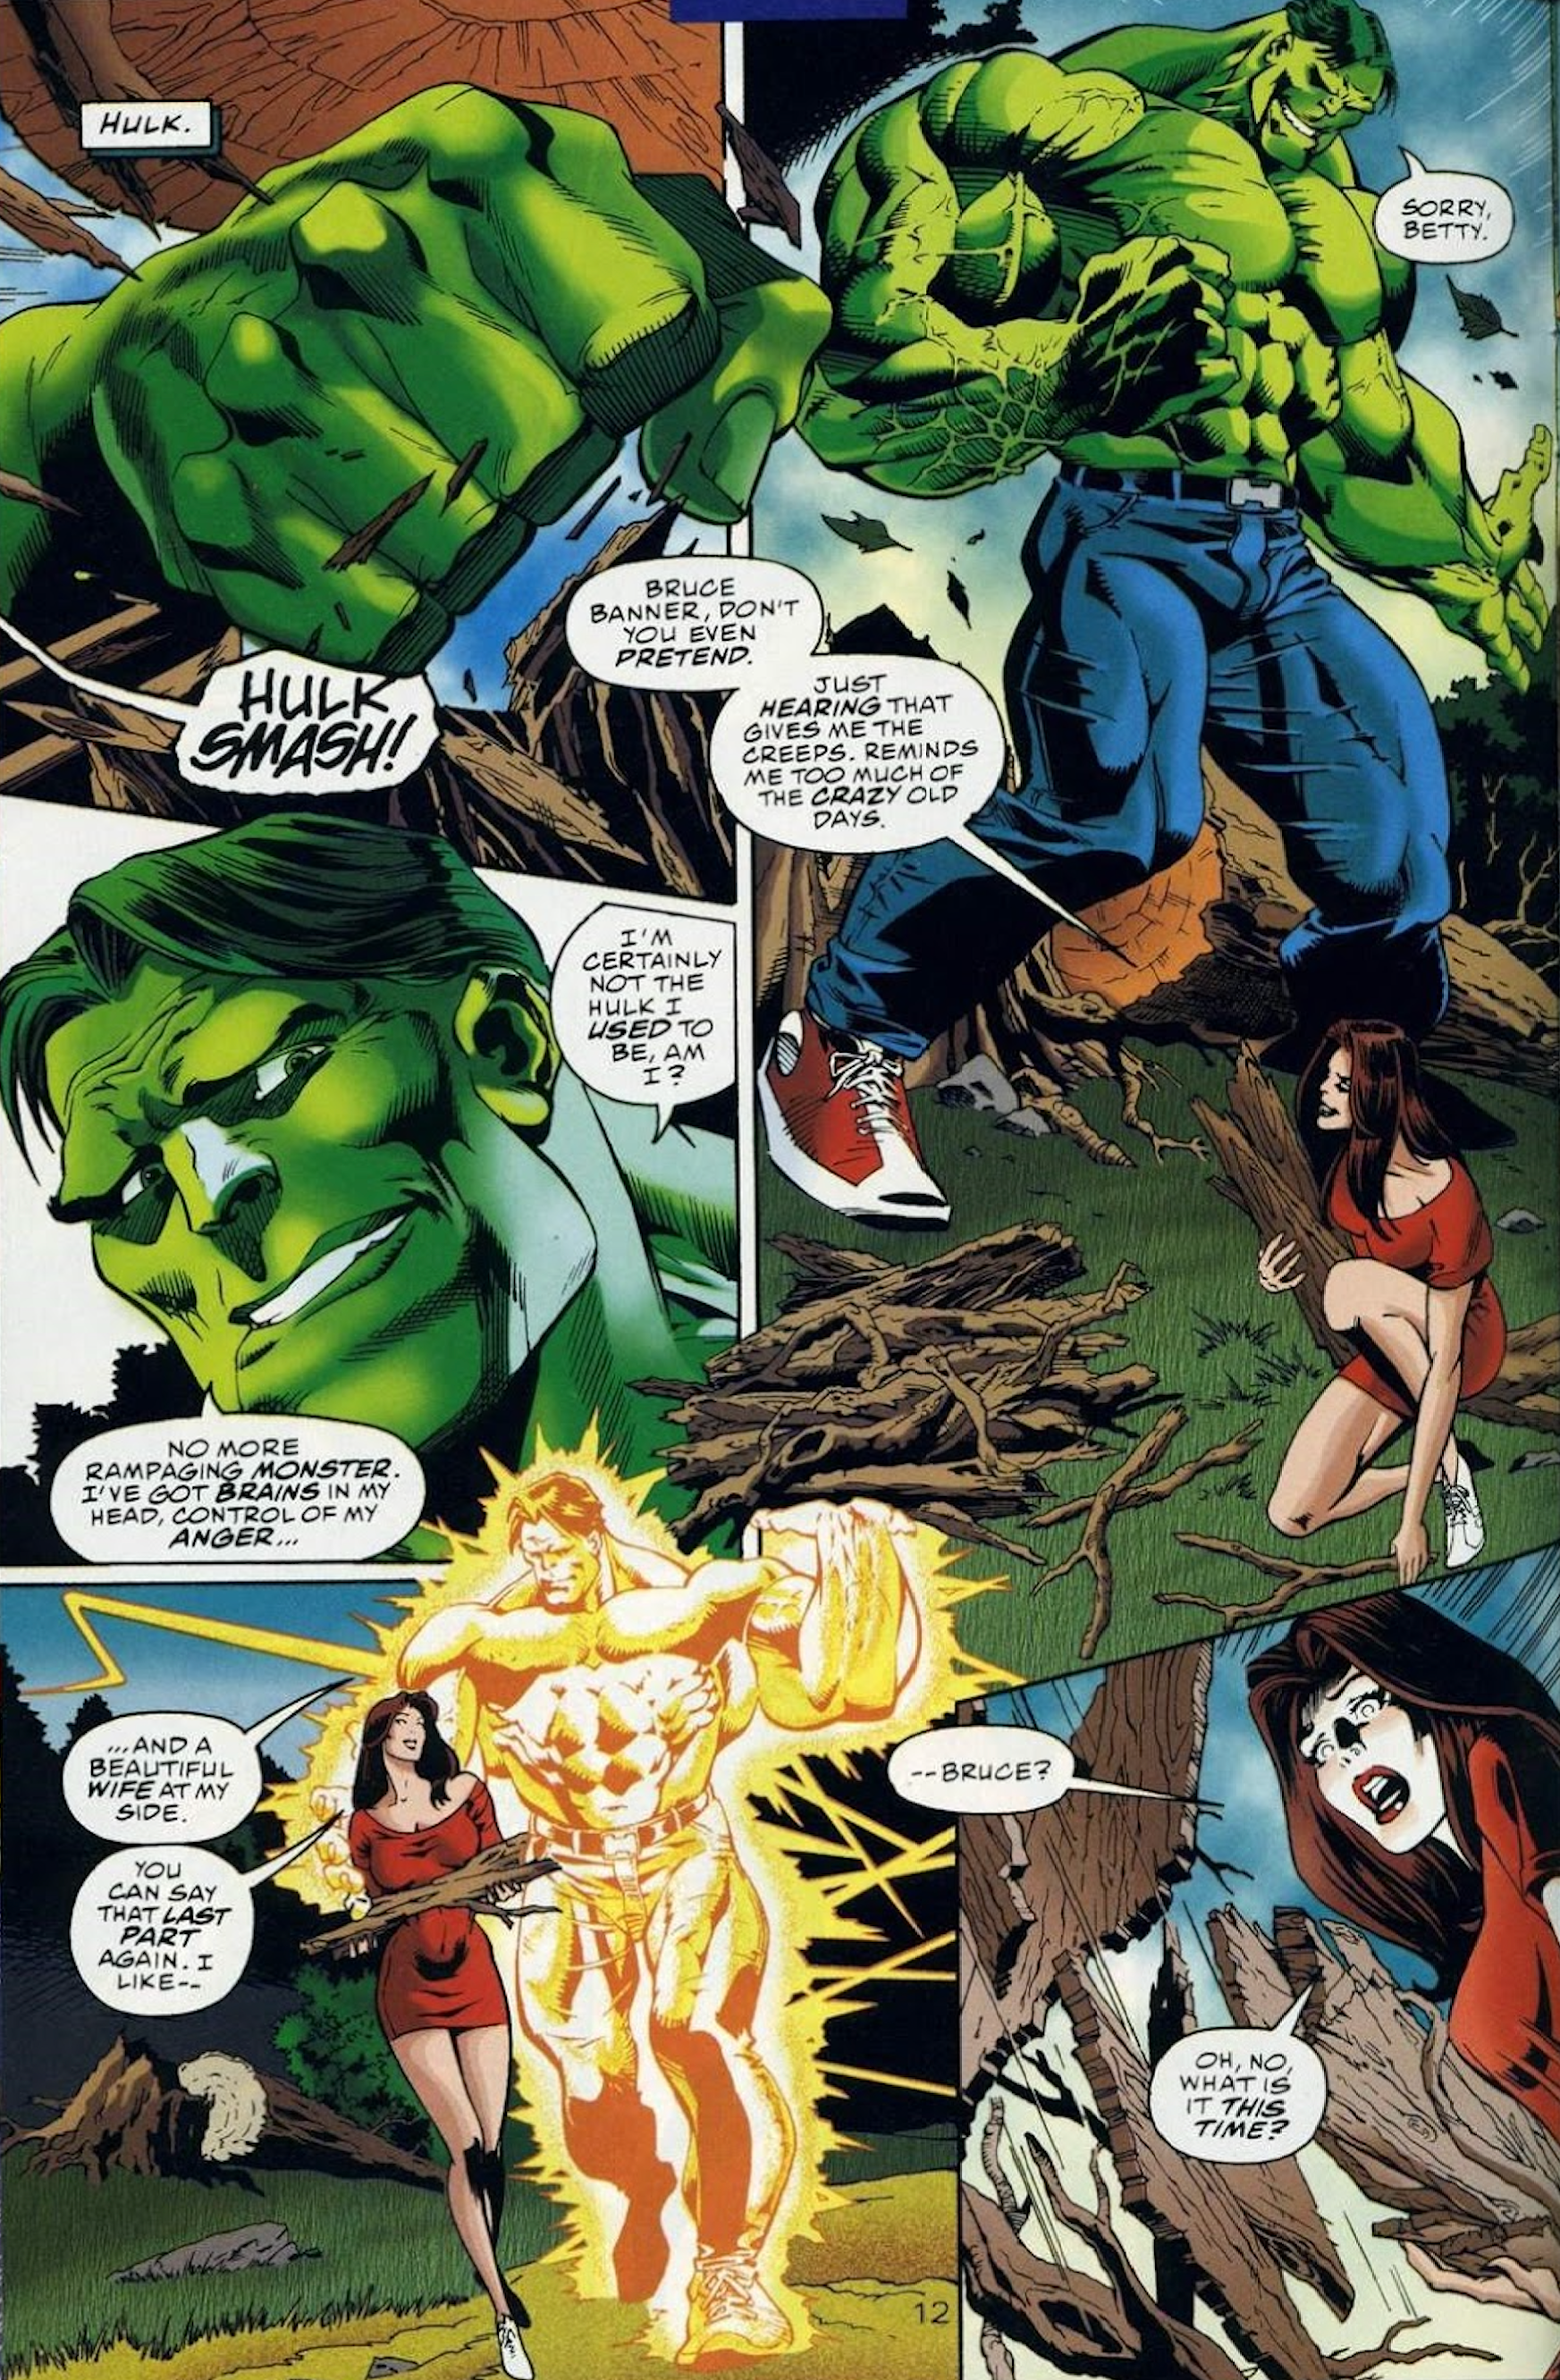 Smart Hulk in Marvel vs DC